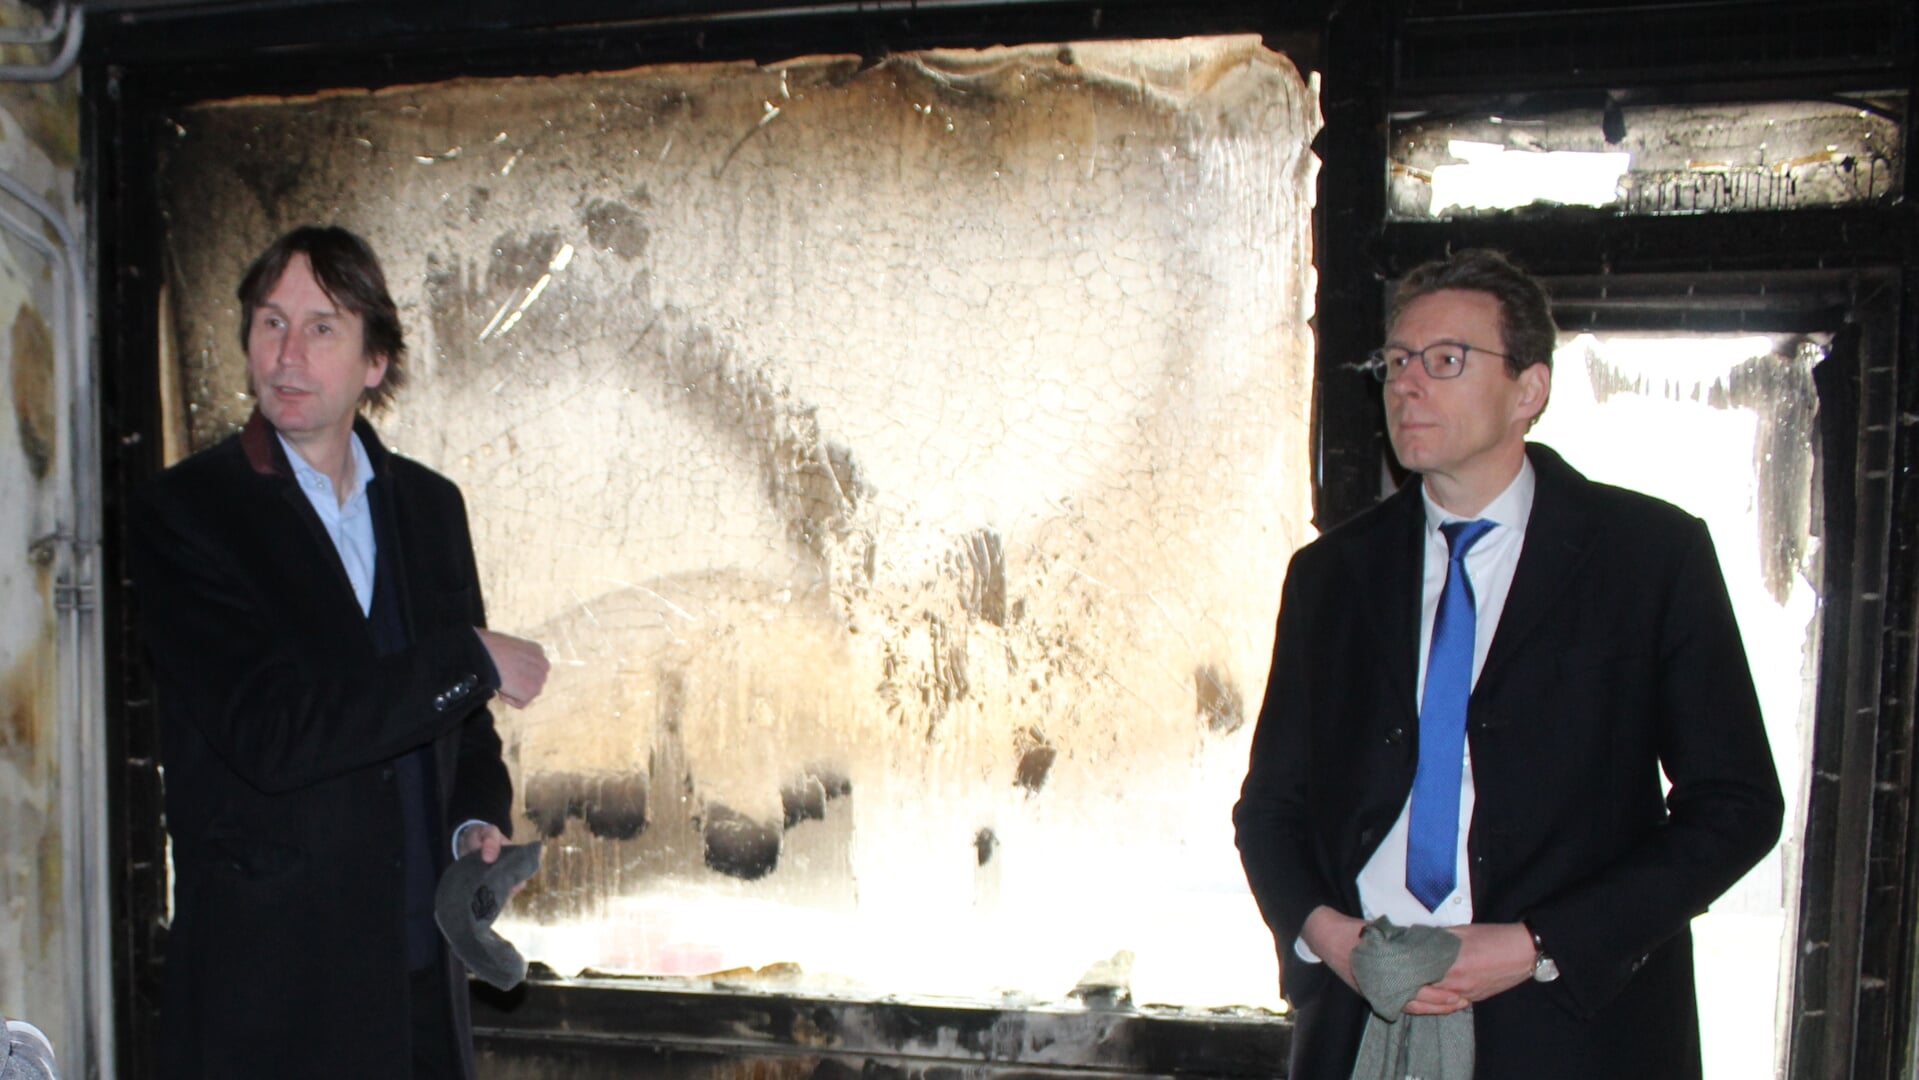 Wethouder Herbert Raat en burgemeester Tjapko Poppens tijdens een bezoek aan een uitgebrande etagewoning.